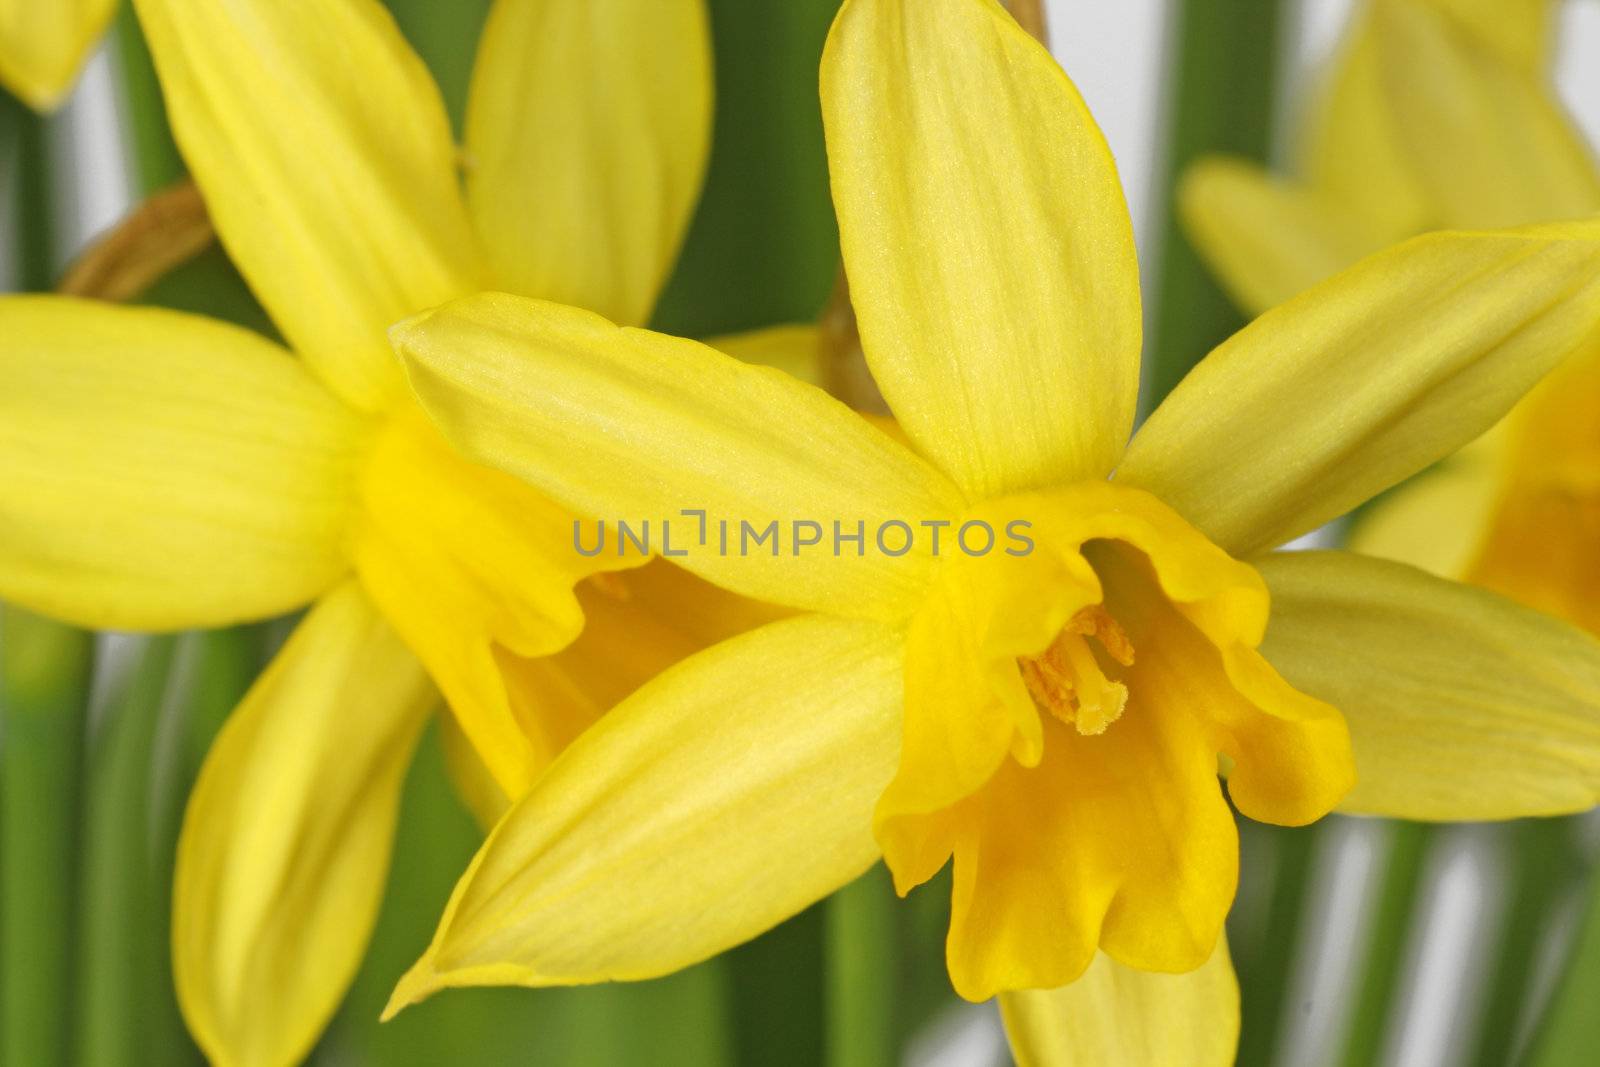 Daffodils by Teamarbeit